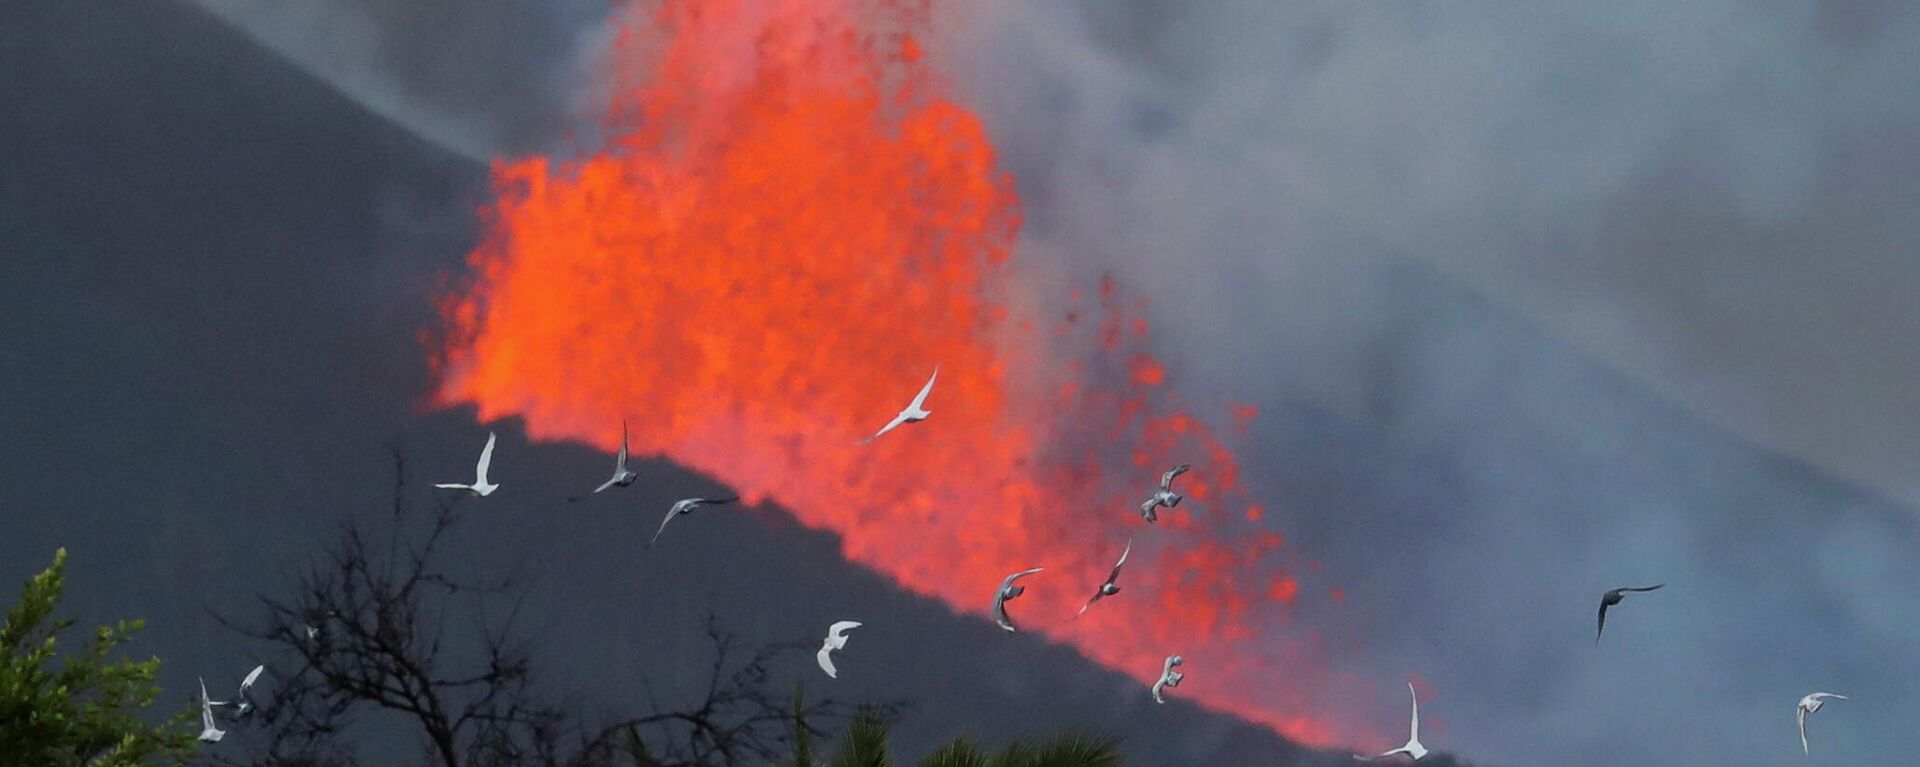 La lava sale expulsada del volcán de Cumbre Vieja (La Palma) - Sputnik Mundo, 1920, 11.10.2021